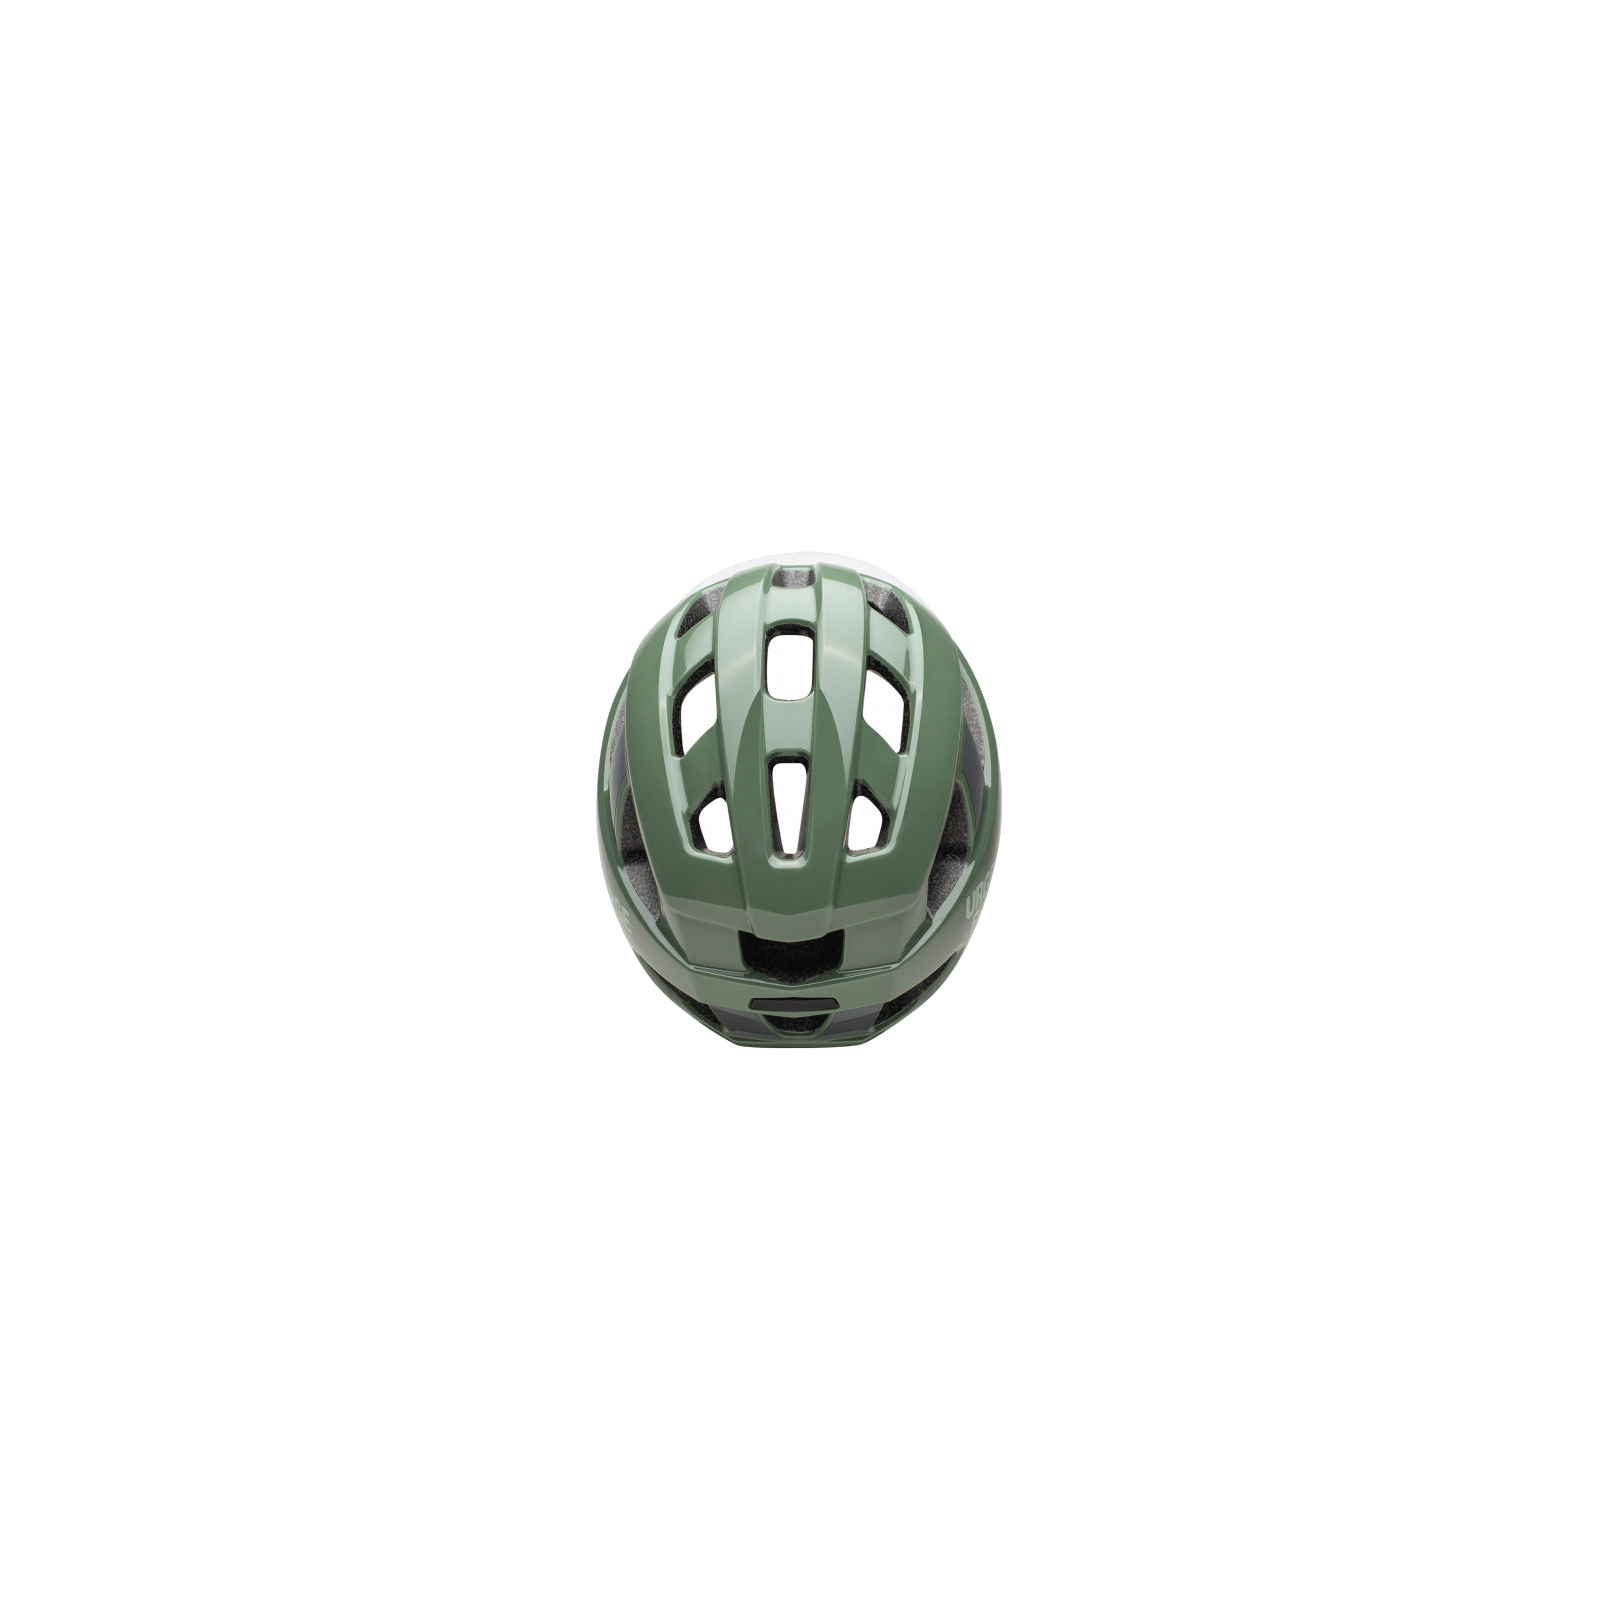 Шлем Urge Strail Світлоповертальний L/XL 59-63 см (UBP22694L) изображение 4